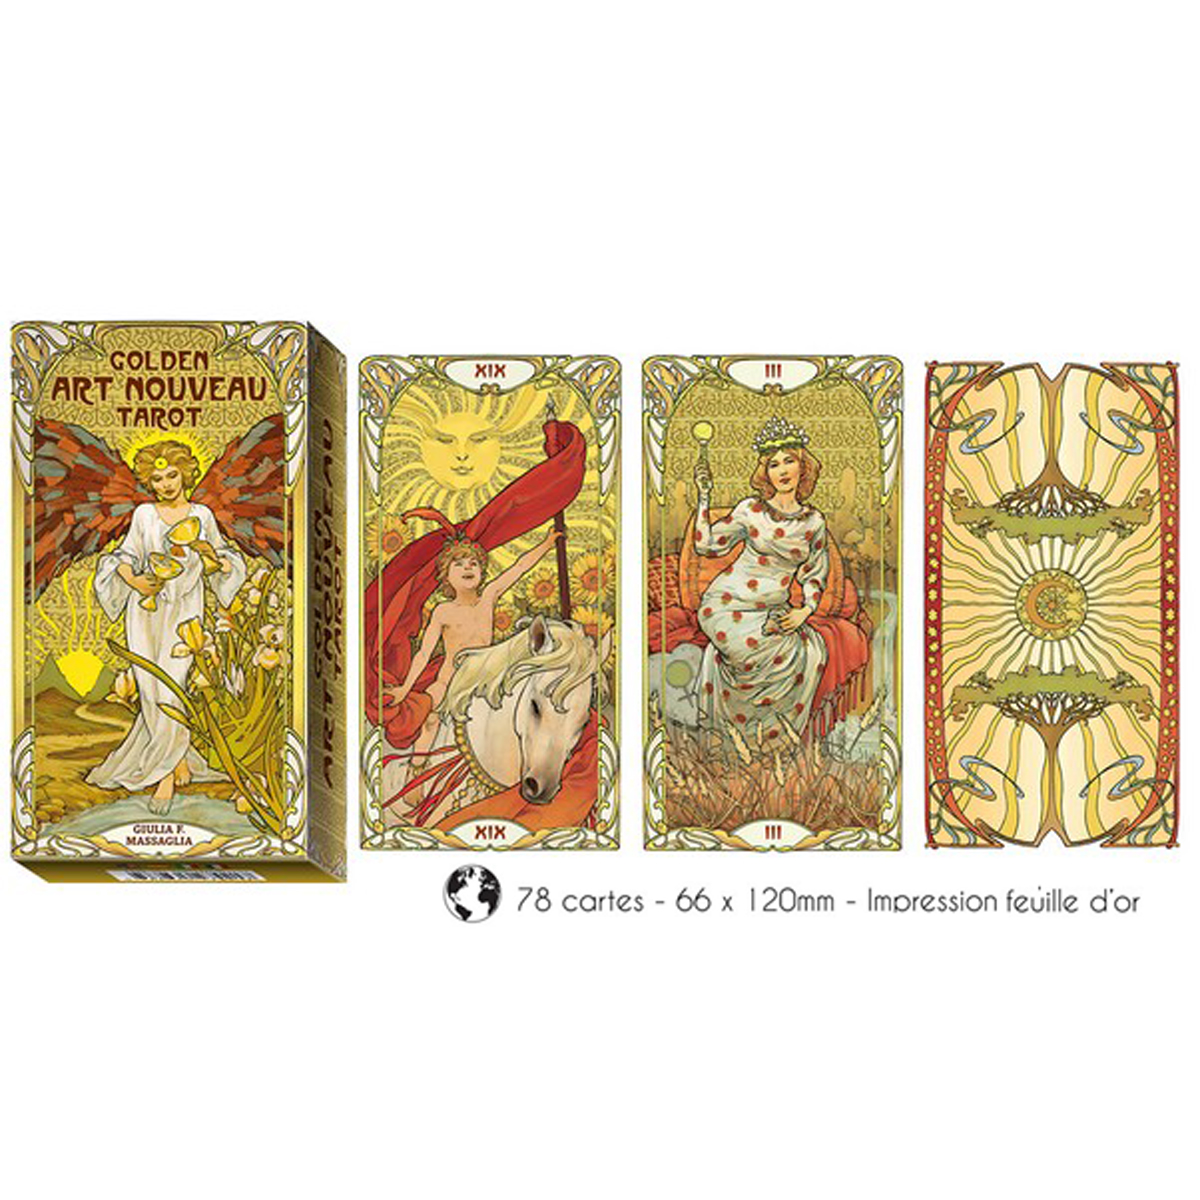 Tarot Créateur \'Golden Art Nouveau\' golden collection - 12x7 cm - [A0982]